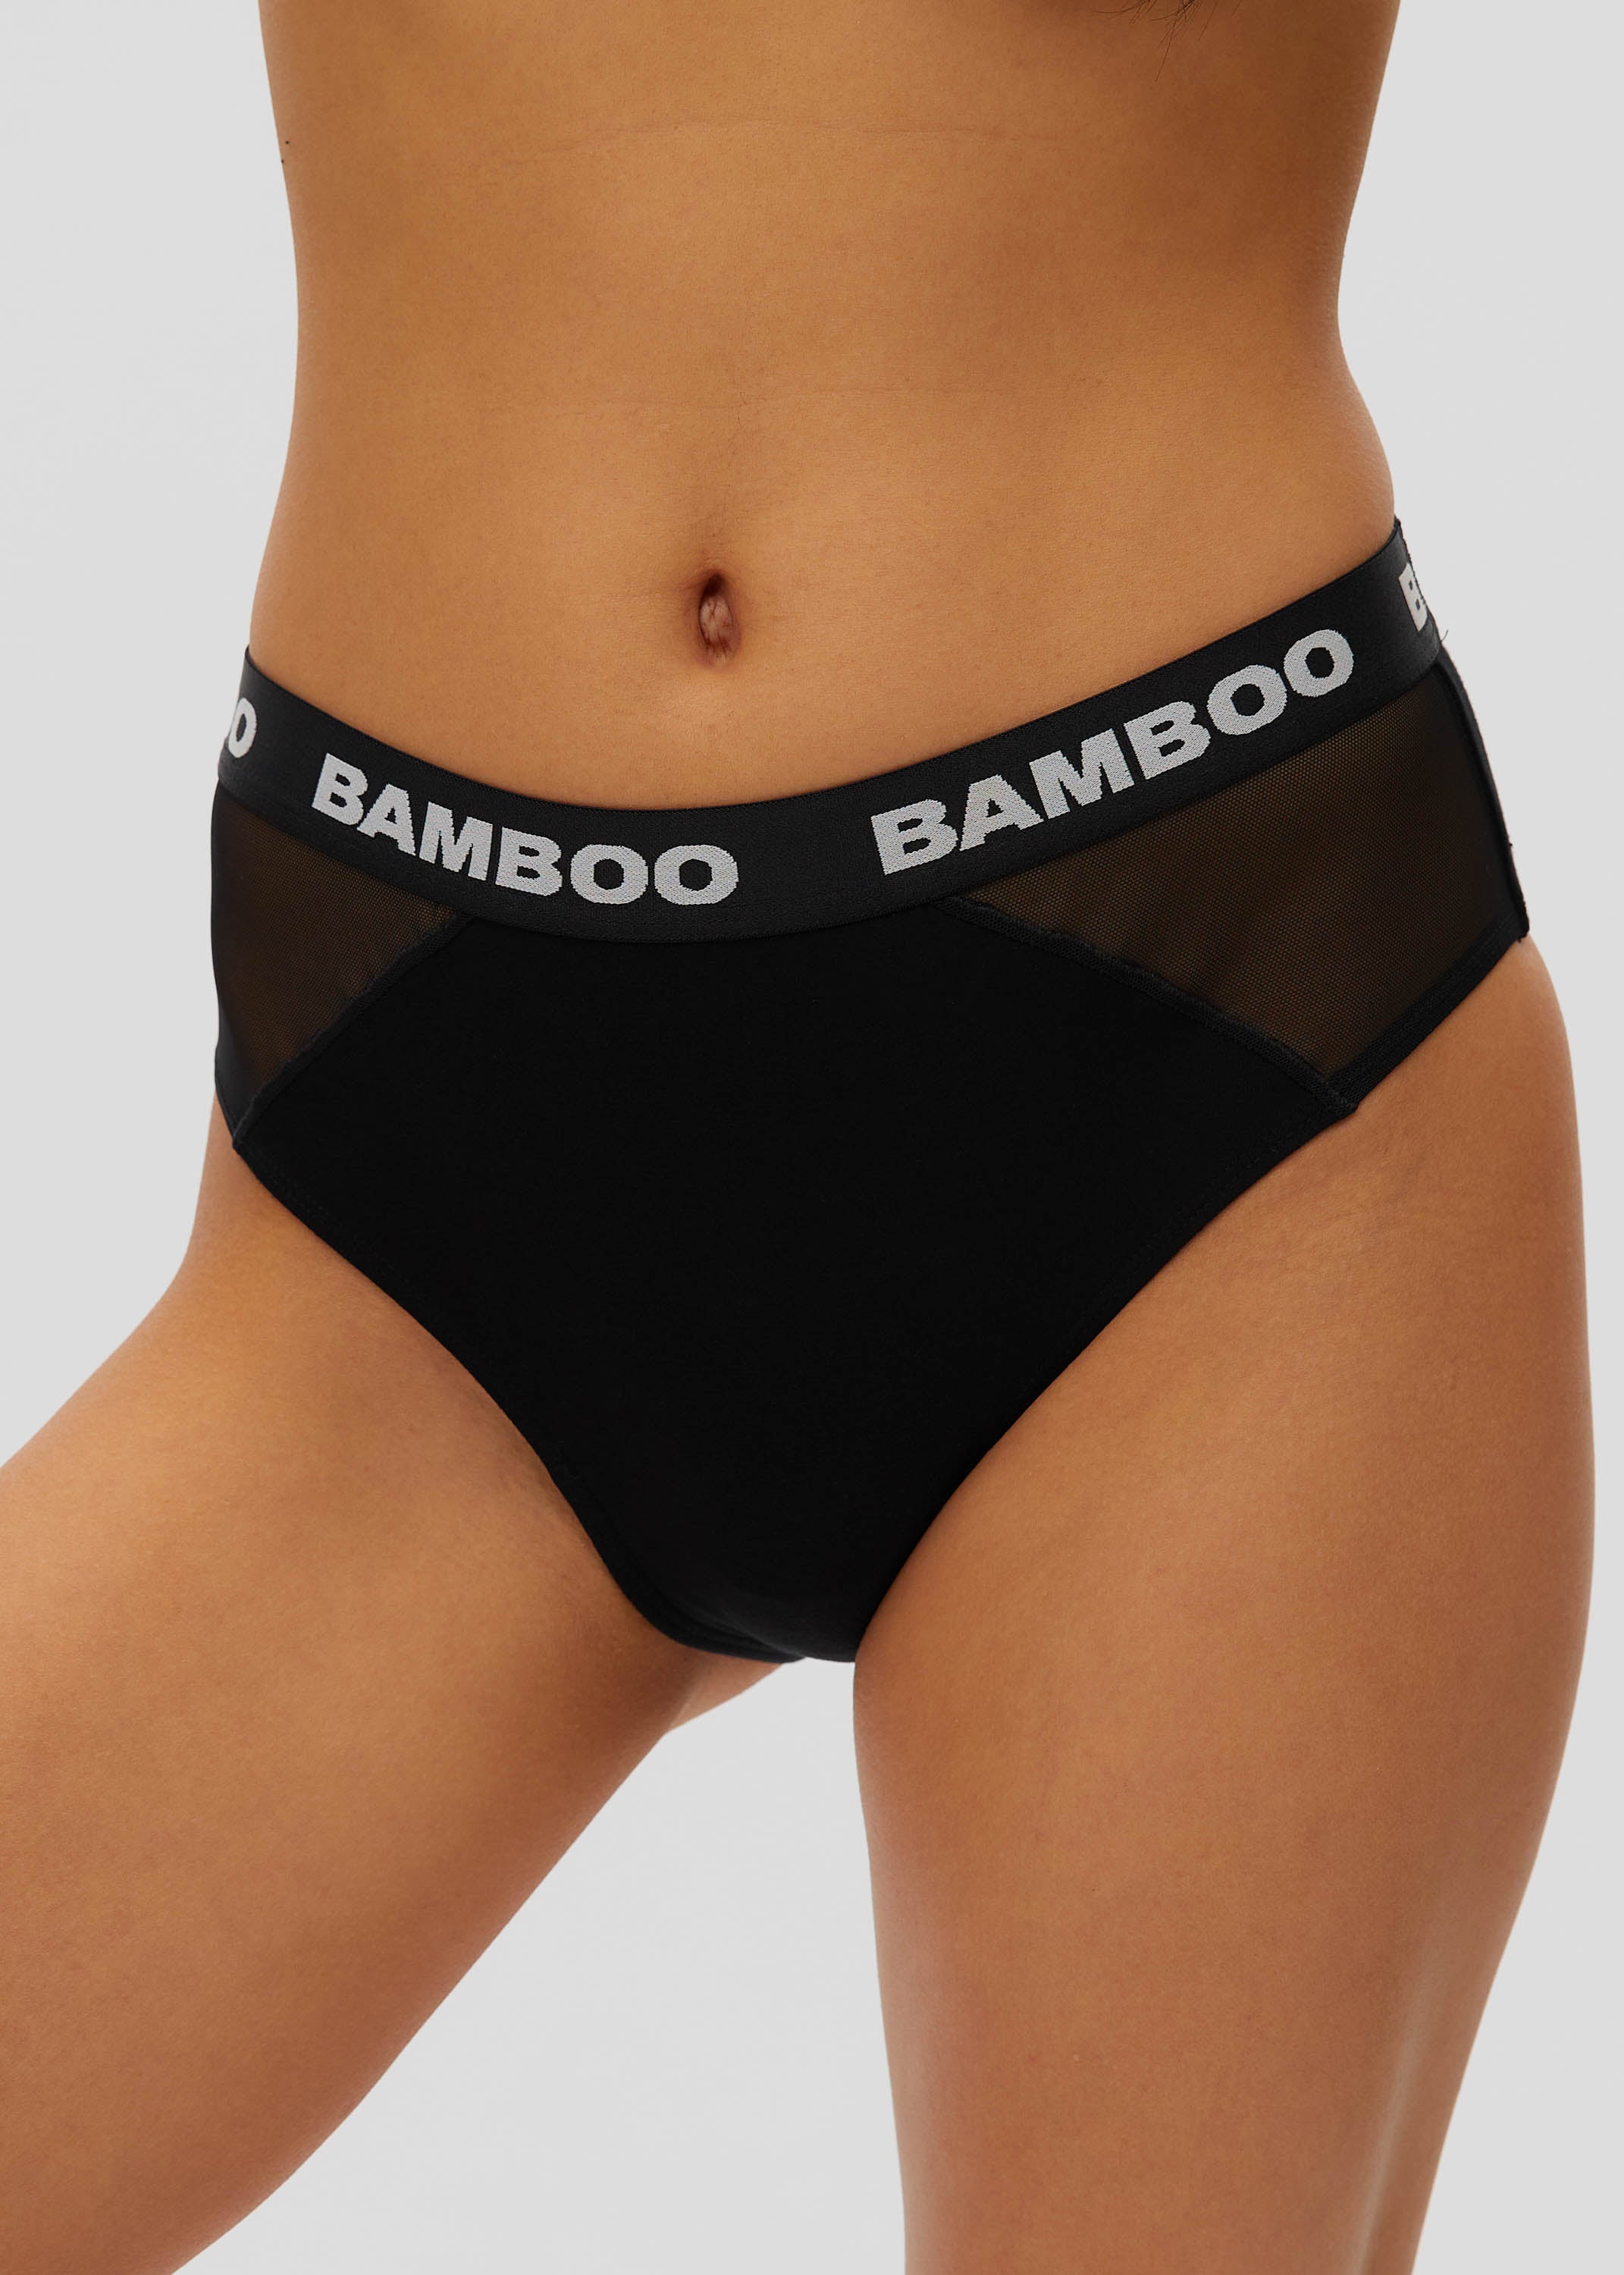 Classic Bikini with Mesh – Bamboo Underwear